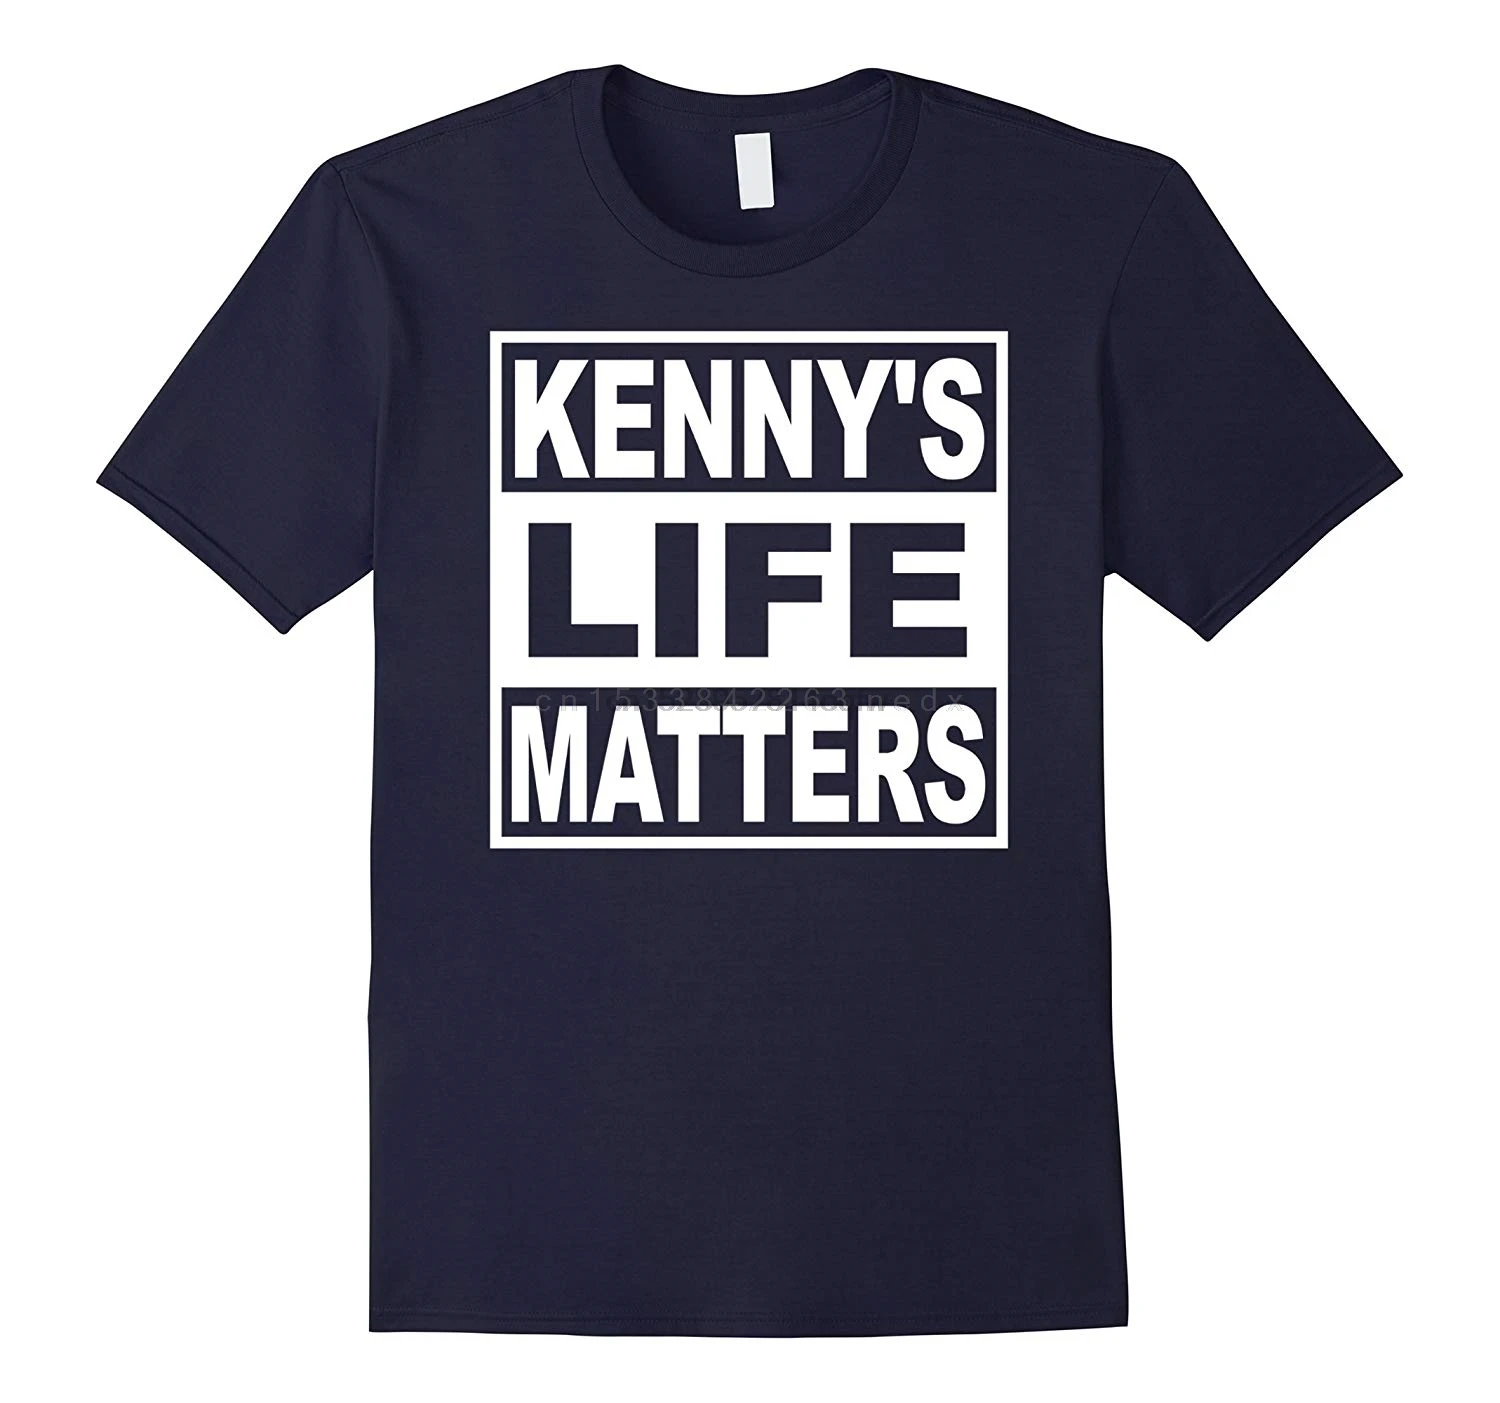 Мужская футболка Kennys Life Things забавная с изображением Южного Парка женские и